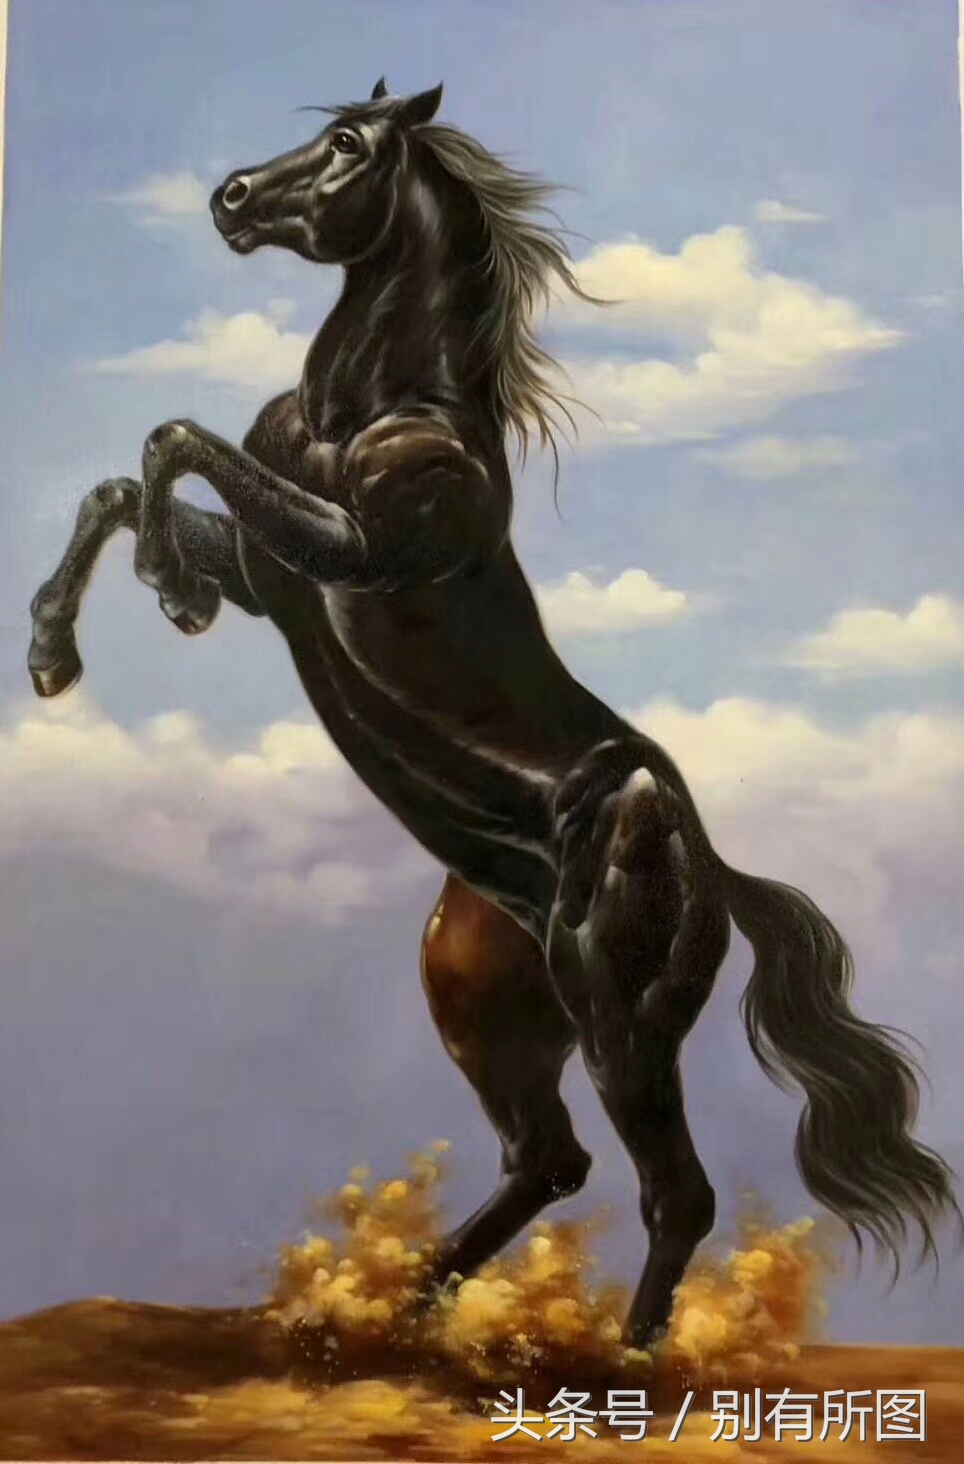 《一马当先》国画油画系列，喜欢马的朋友千万不要错过，一饱眼福